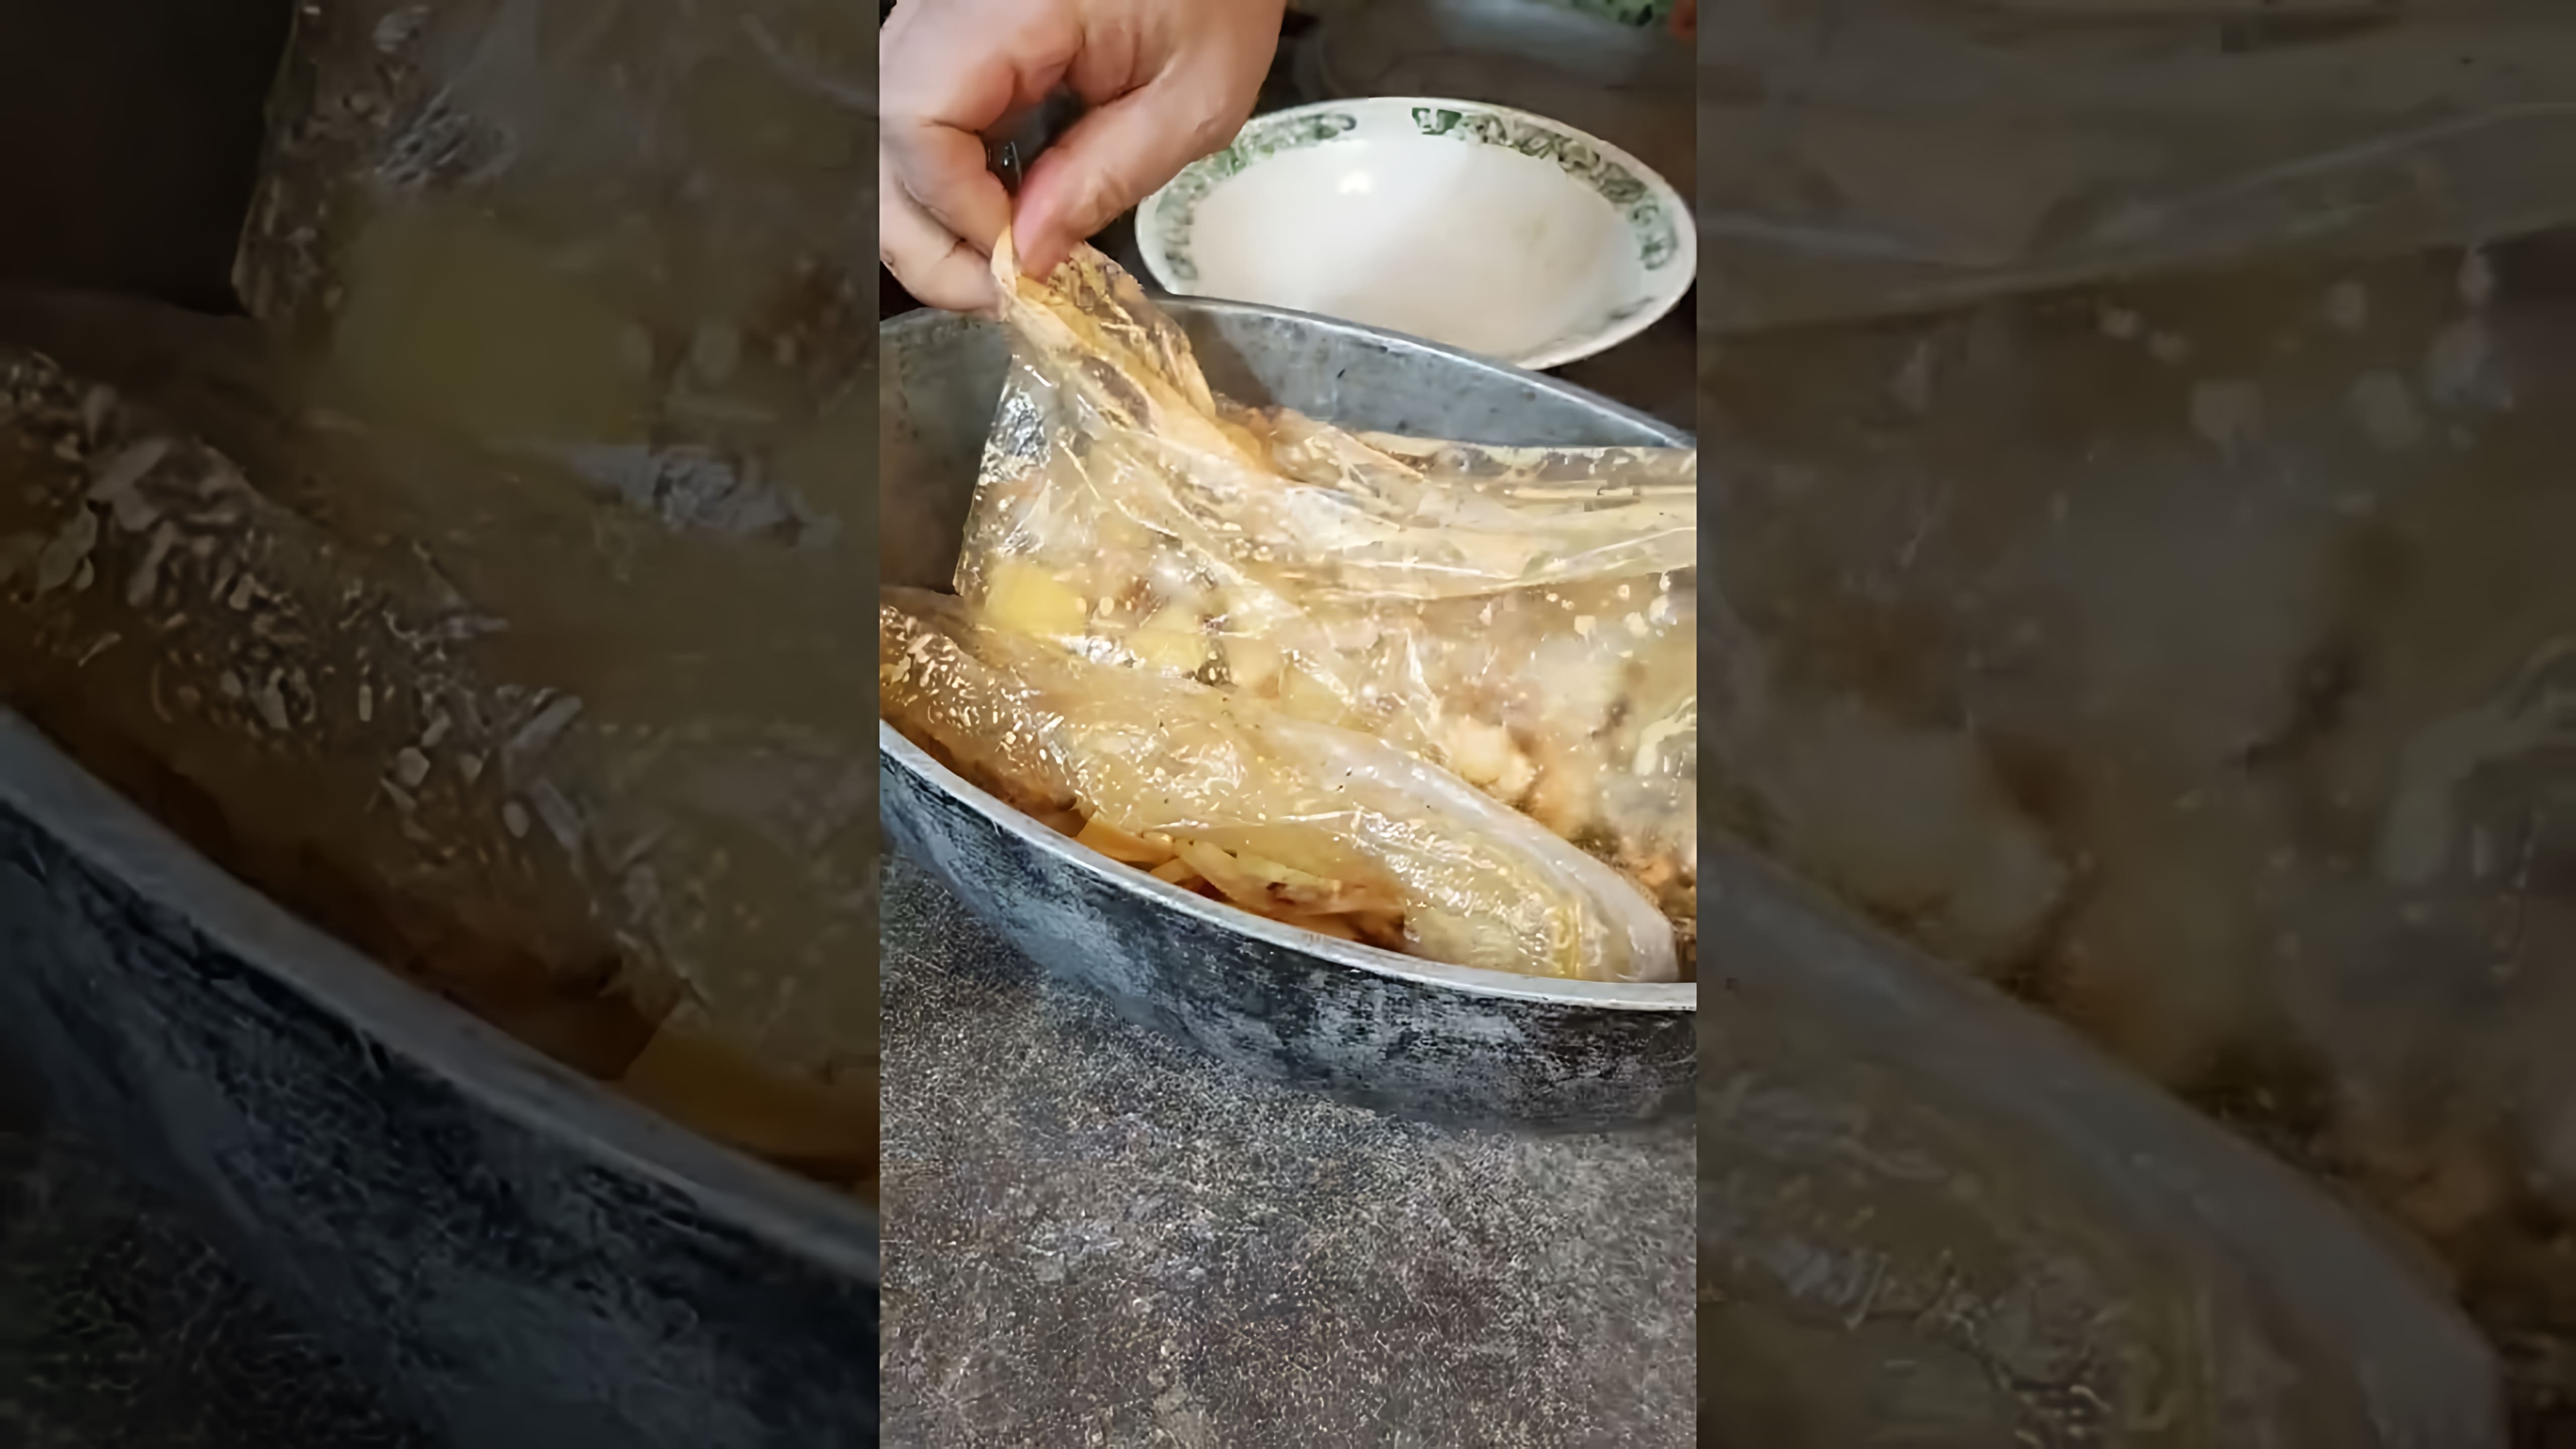 В этом видео демонстрируется процесс приготовления картошки в утятнице